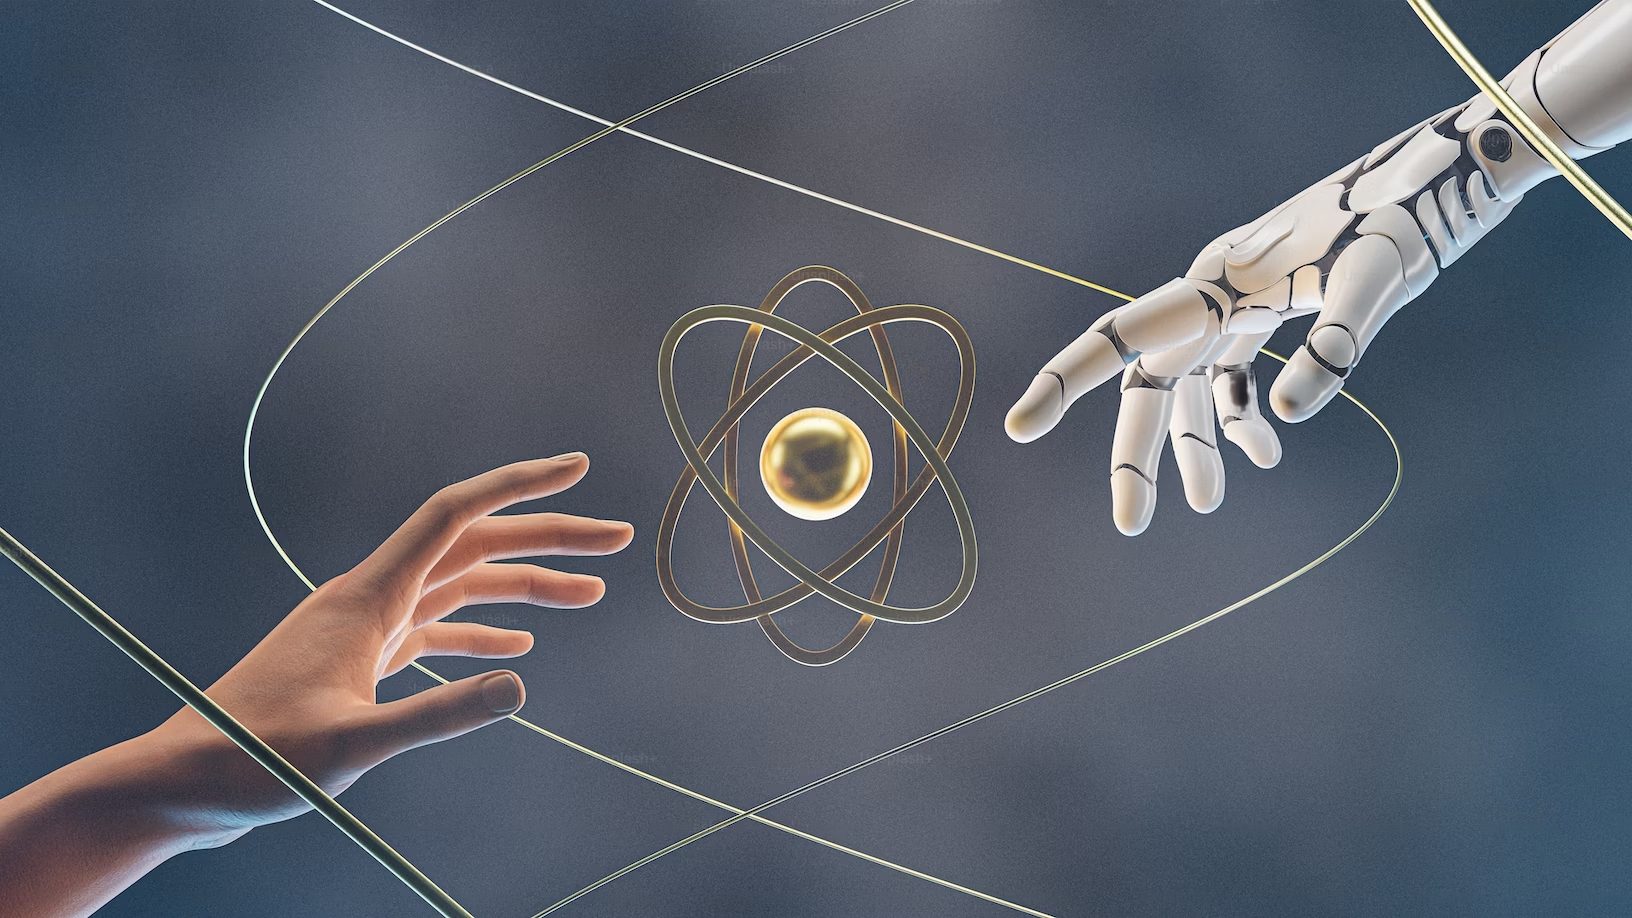 Une main humaine tendue vers une main robotique avec au centre un noyau d'atome.